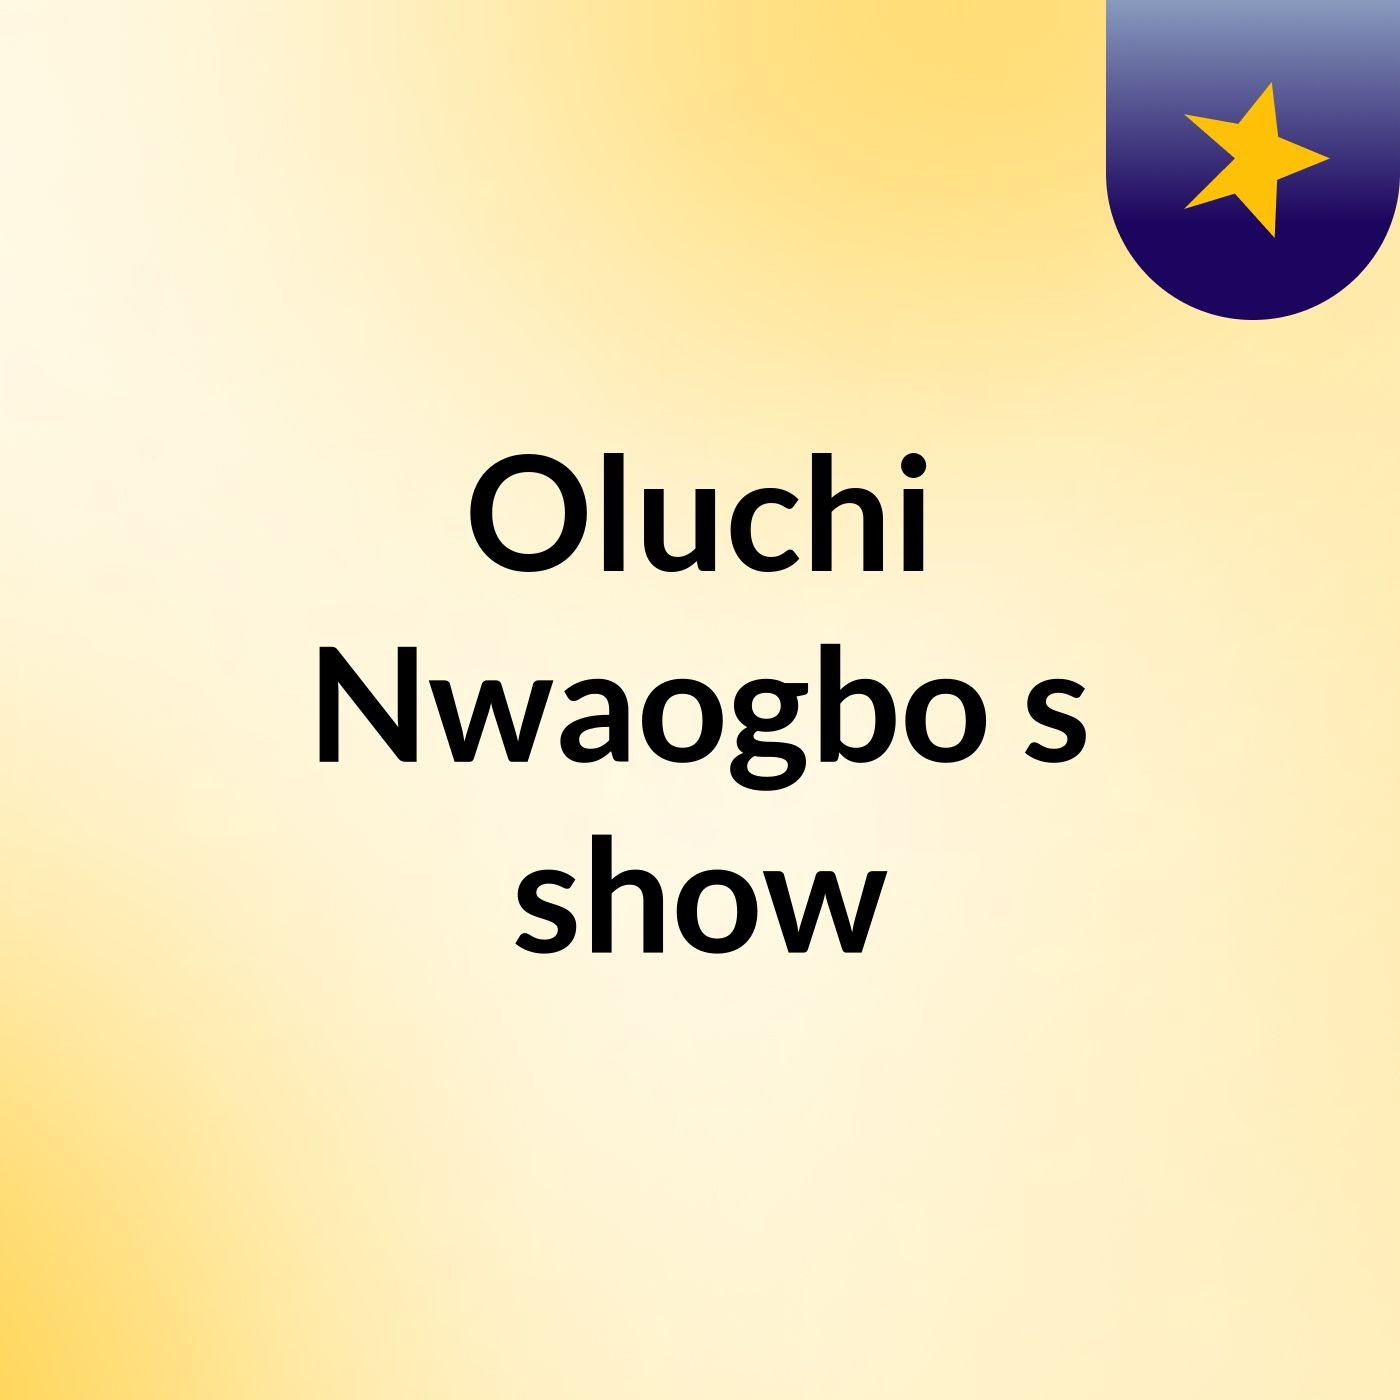 Oluchi Nwaogbo's show